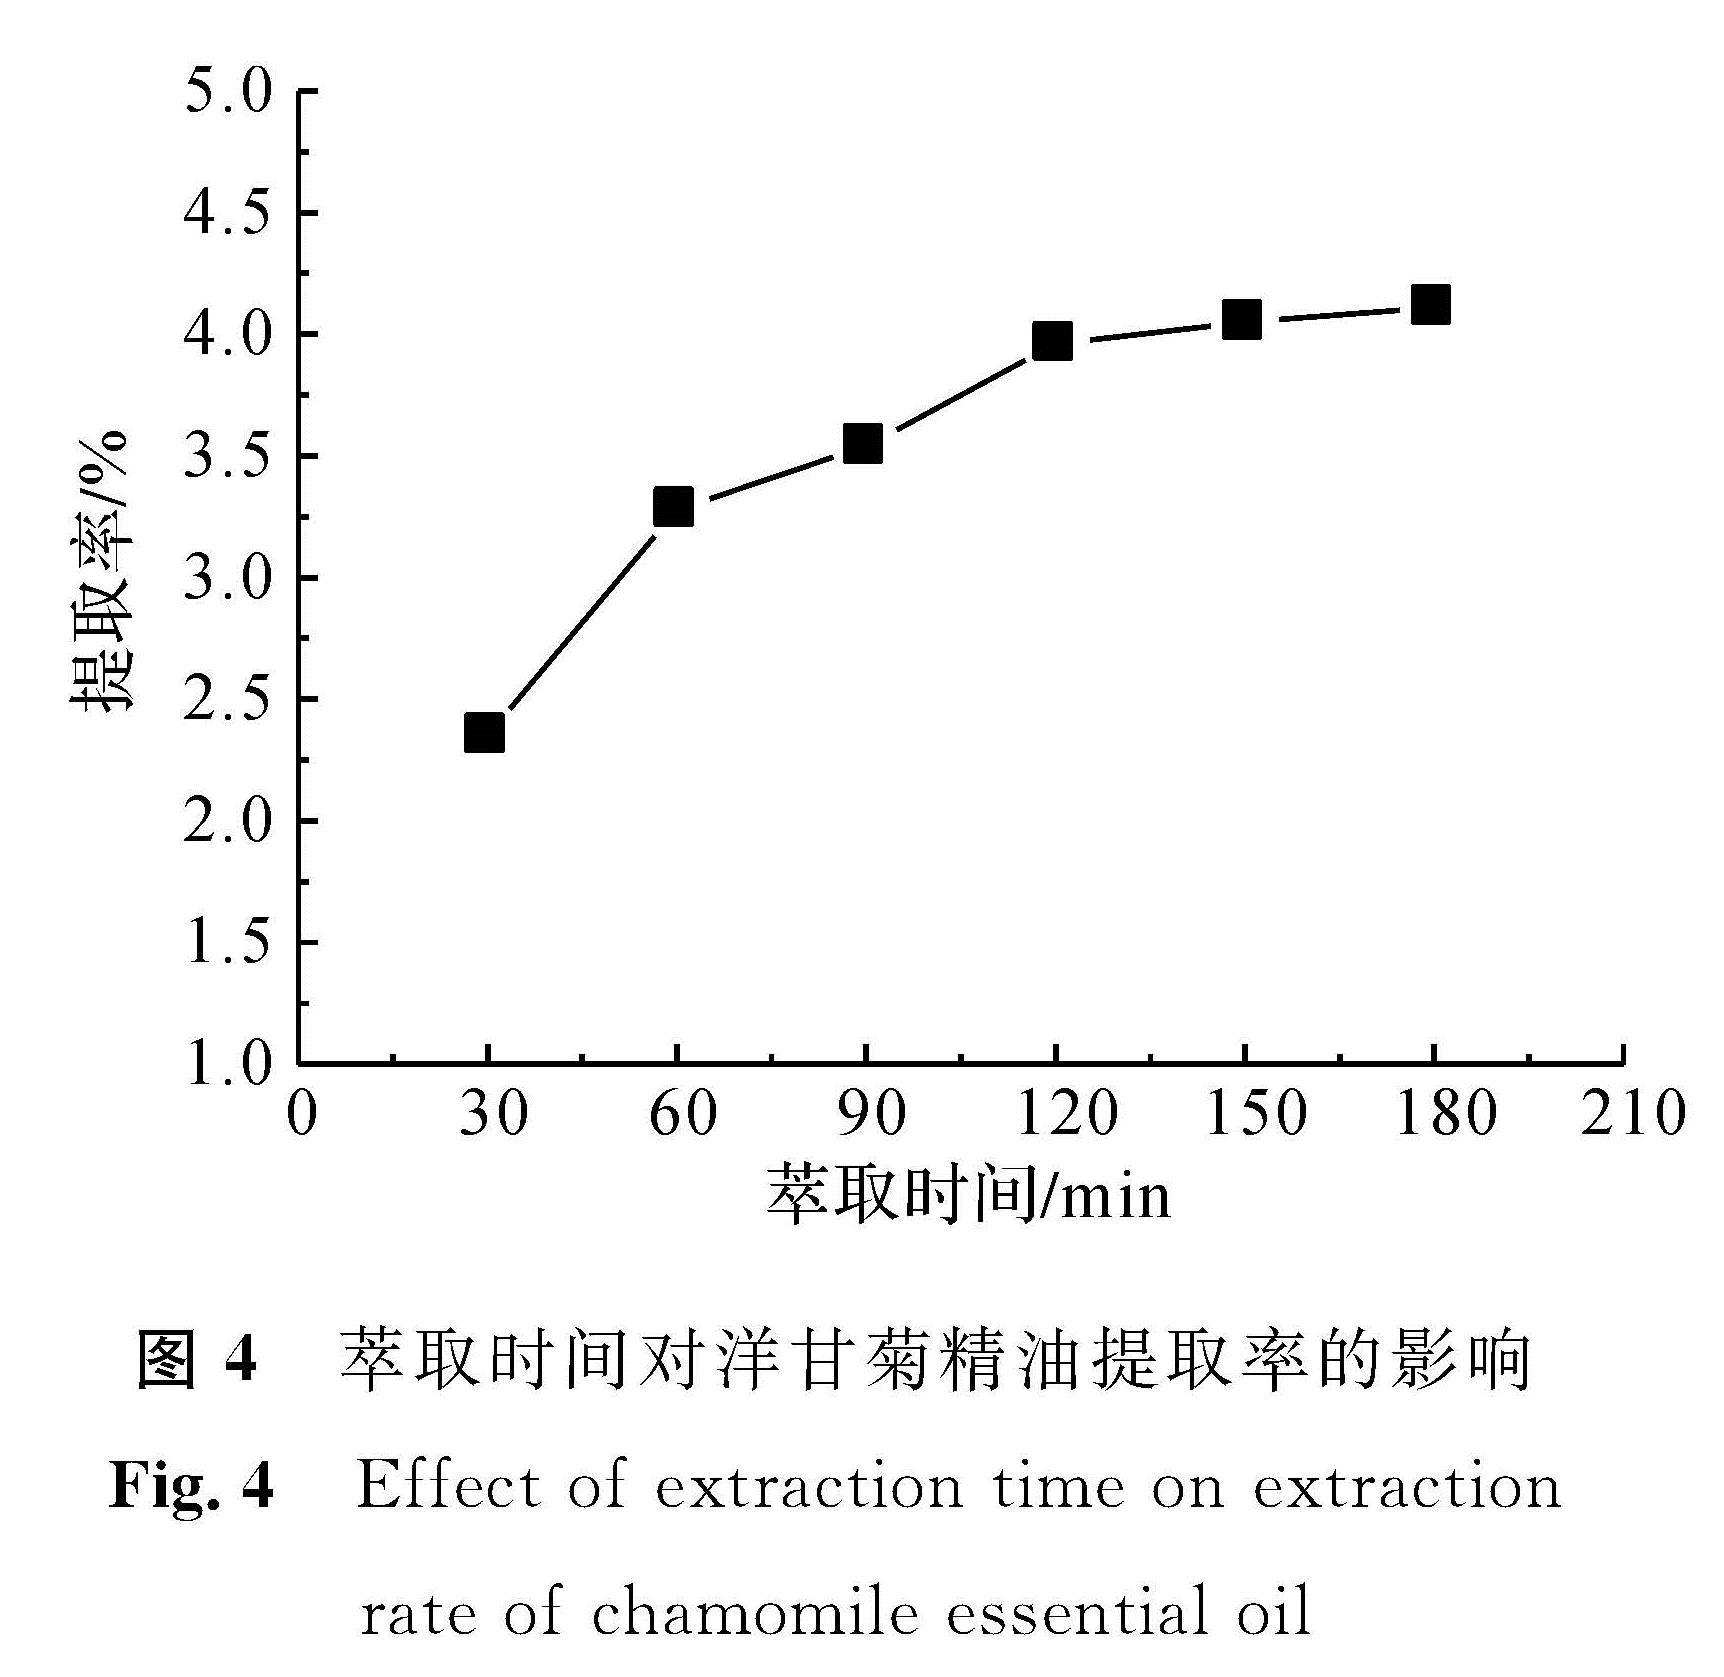 图4 萃取时间对洋甘菊精油提取率的影响<br/>Fig.4 Effect of extraction time on extraction rate of chamomile essential oil